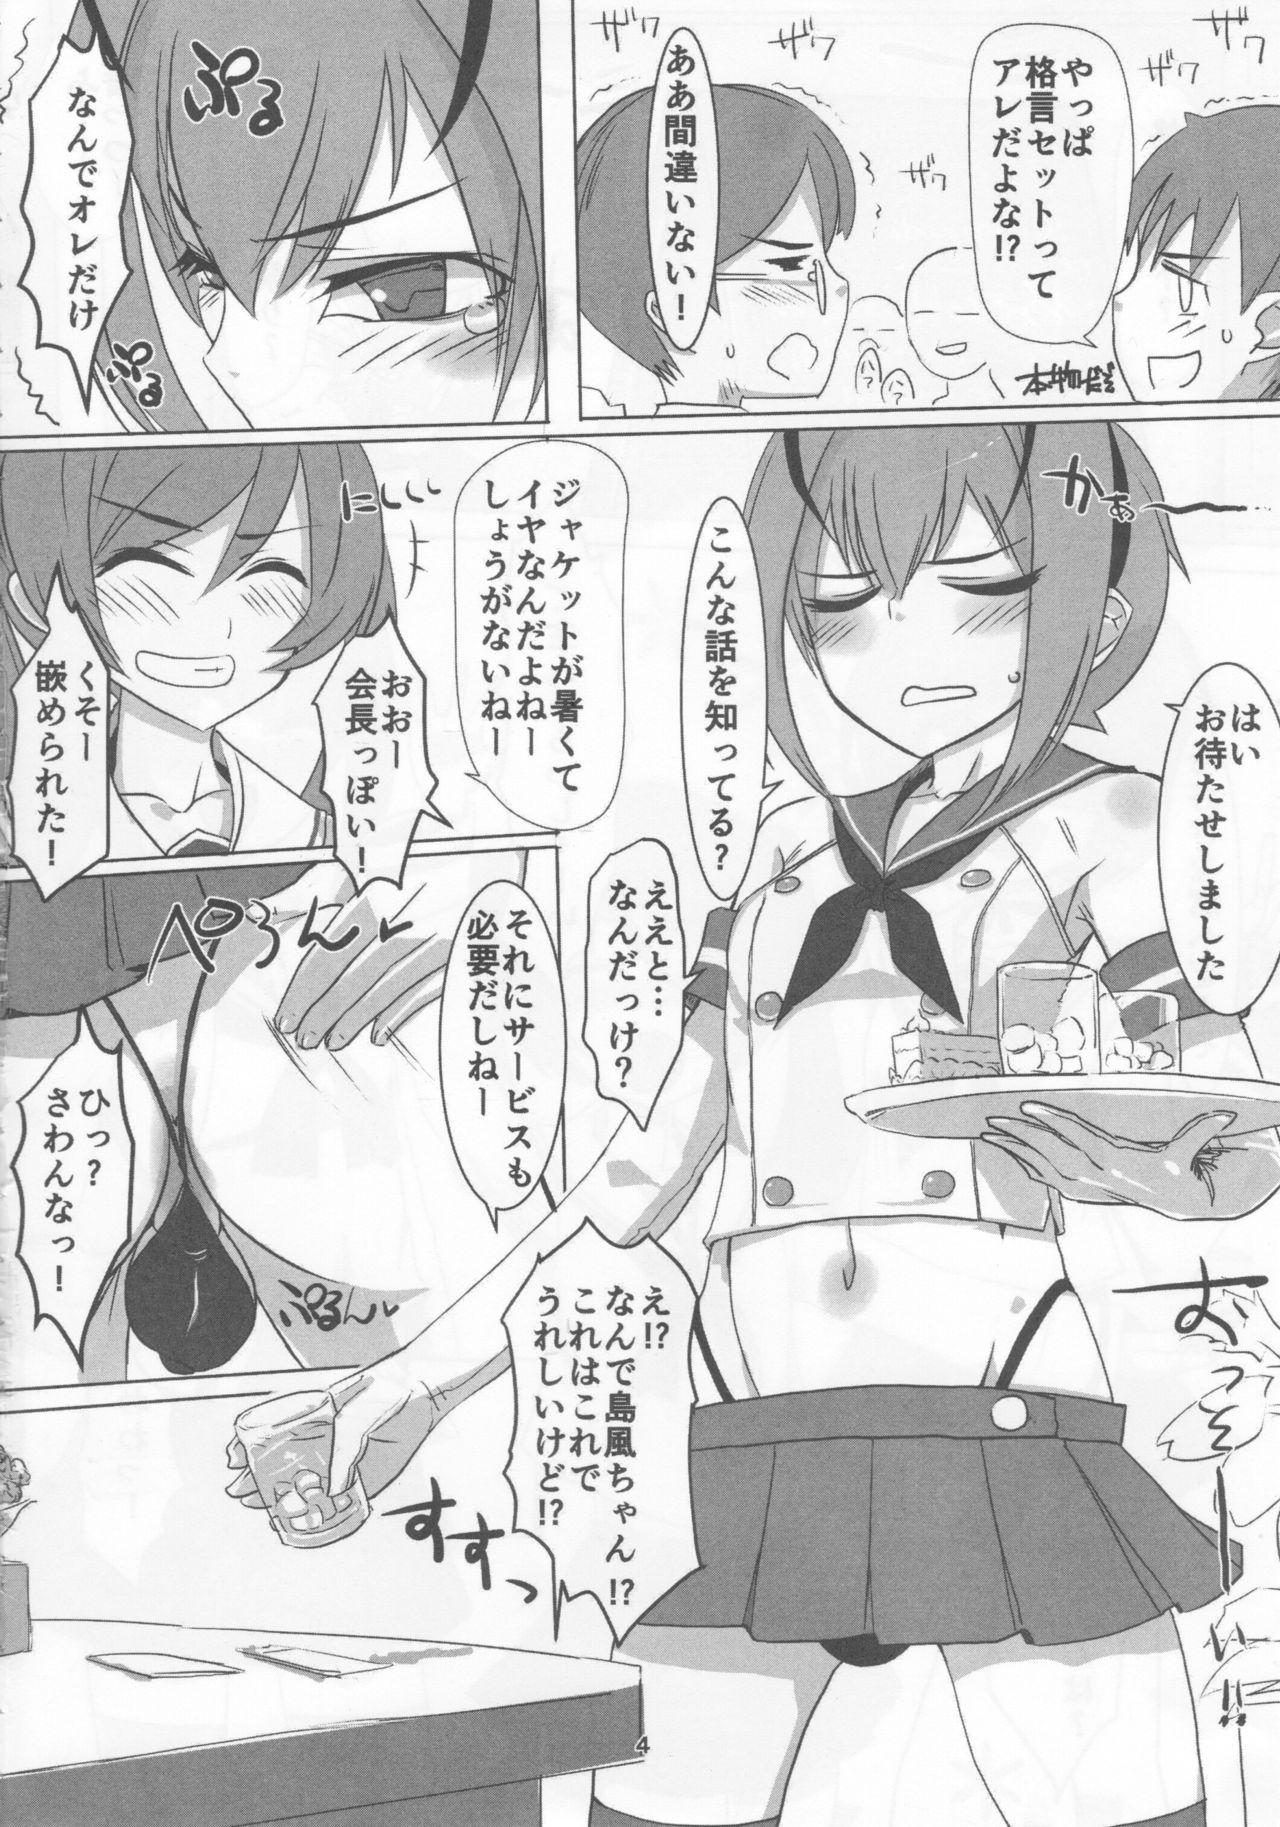 Small Sakurairo Shounen Sabou 13 - Otokonoko wa maid fuku ga osuki Uncensored - Page 3